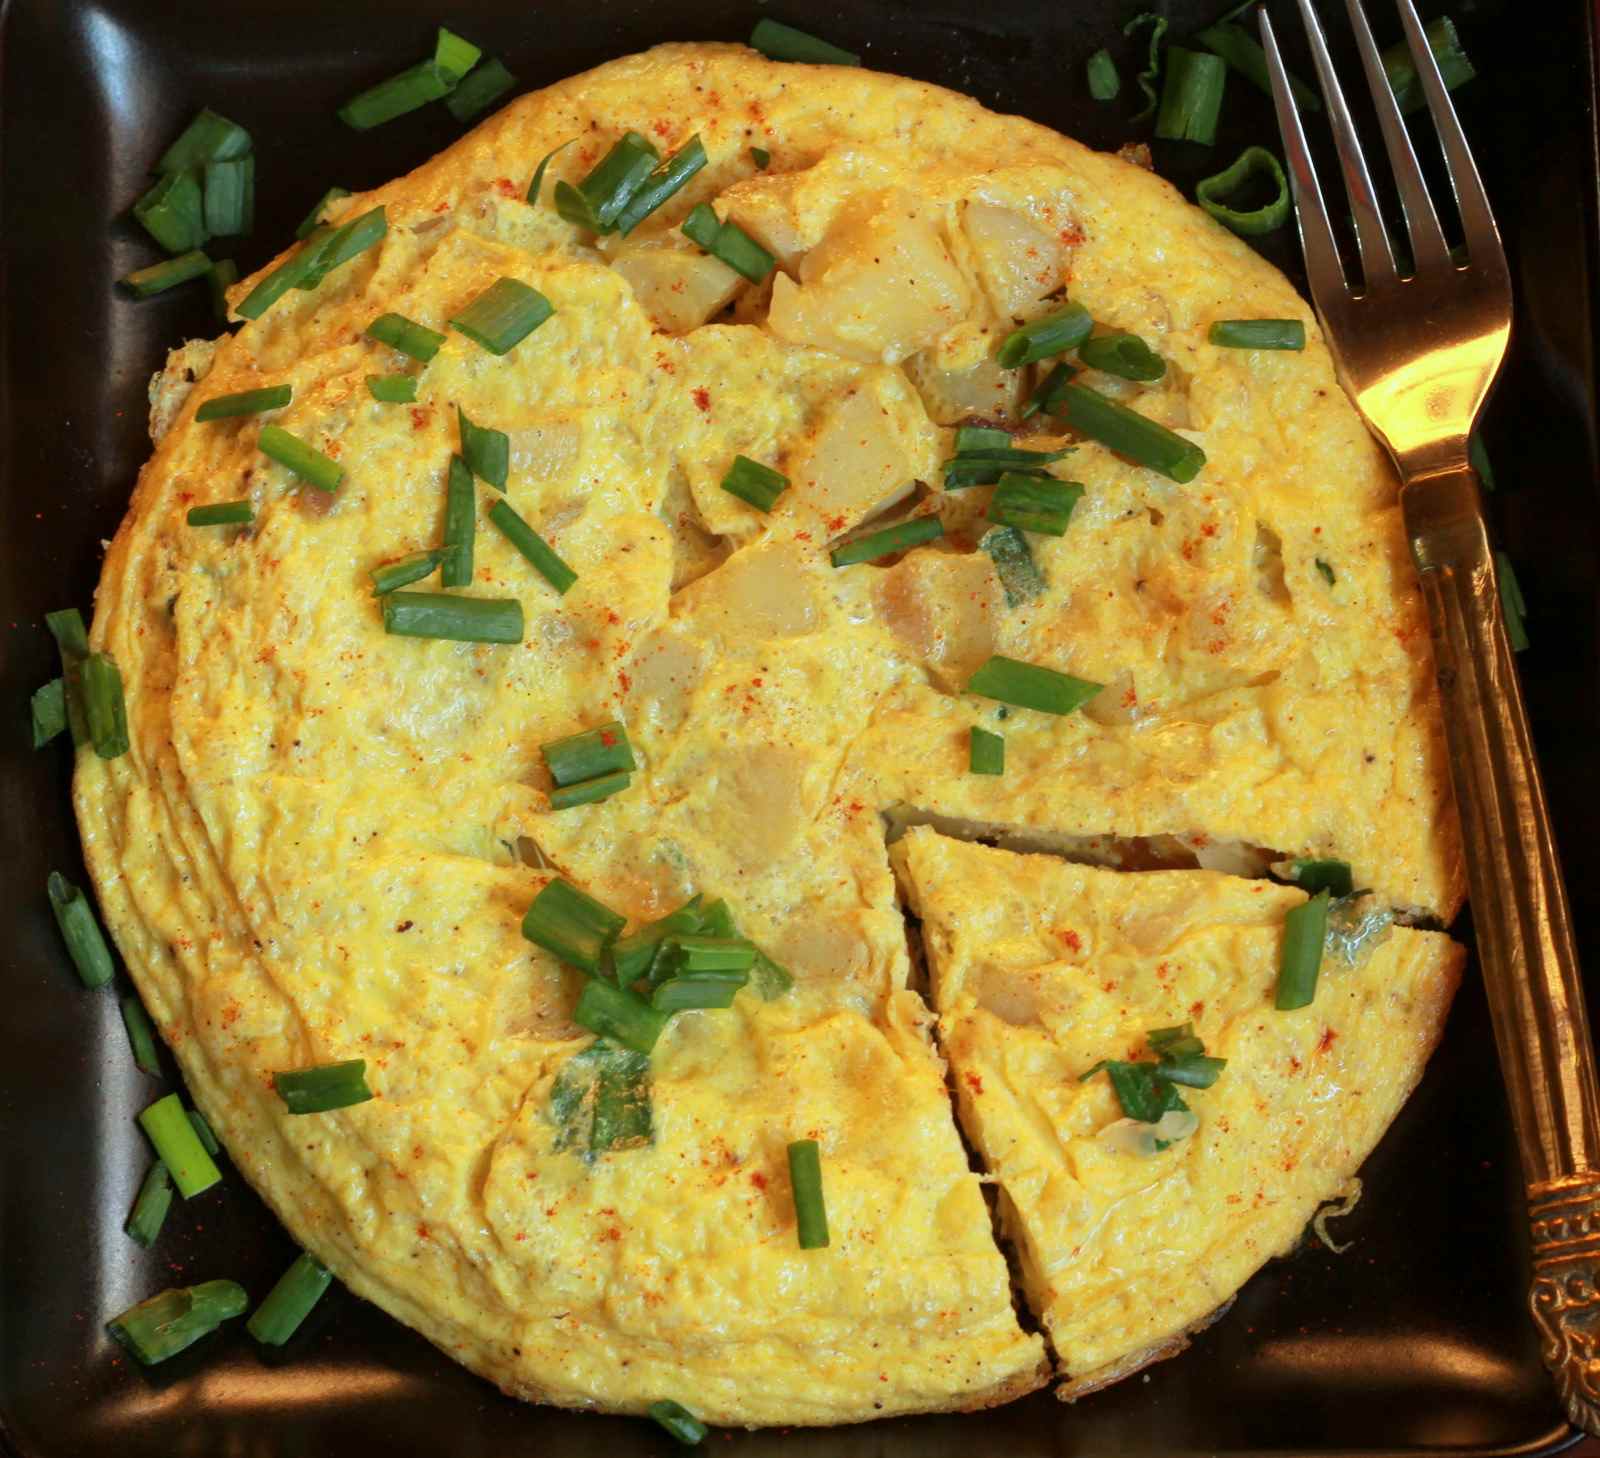 Spanish Omelette Recipe (Tortilla Espanola)